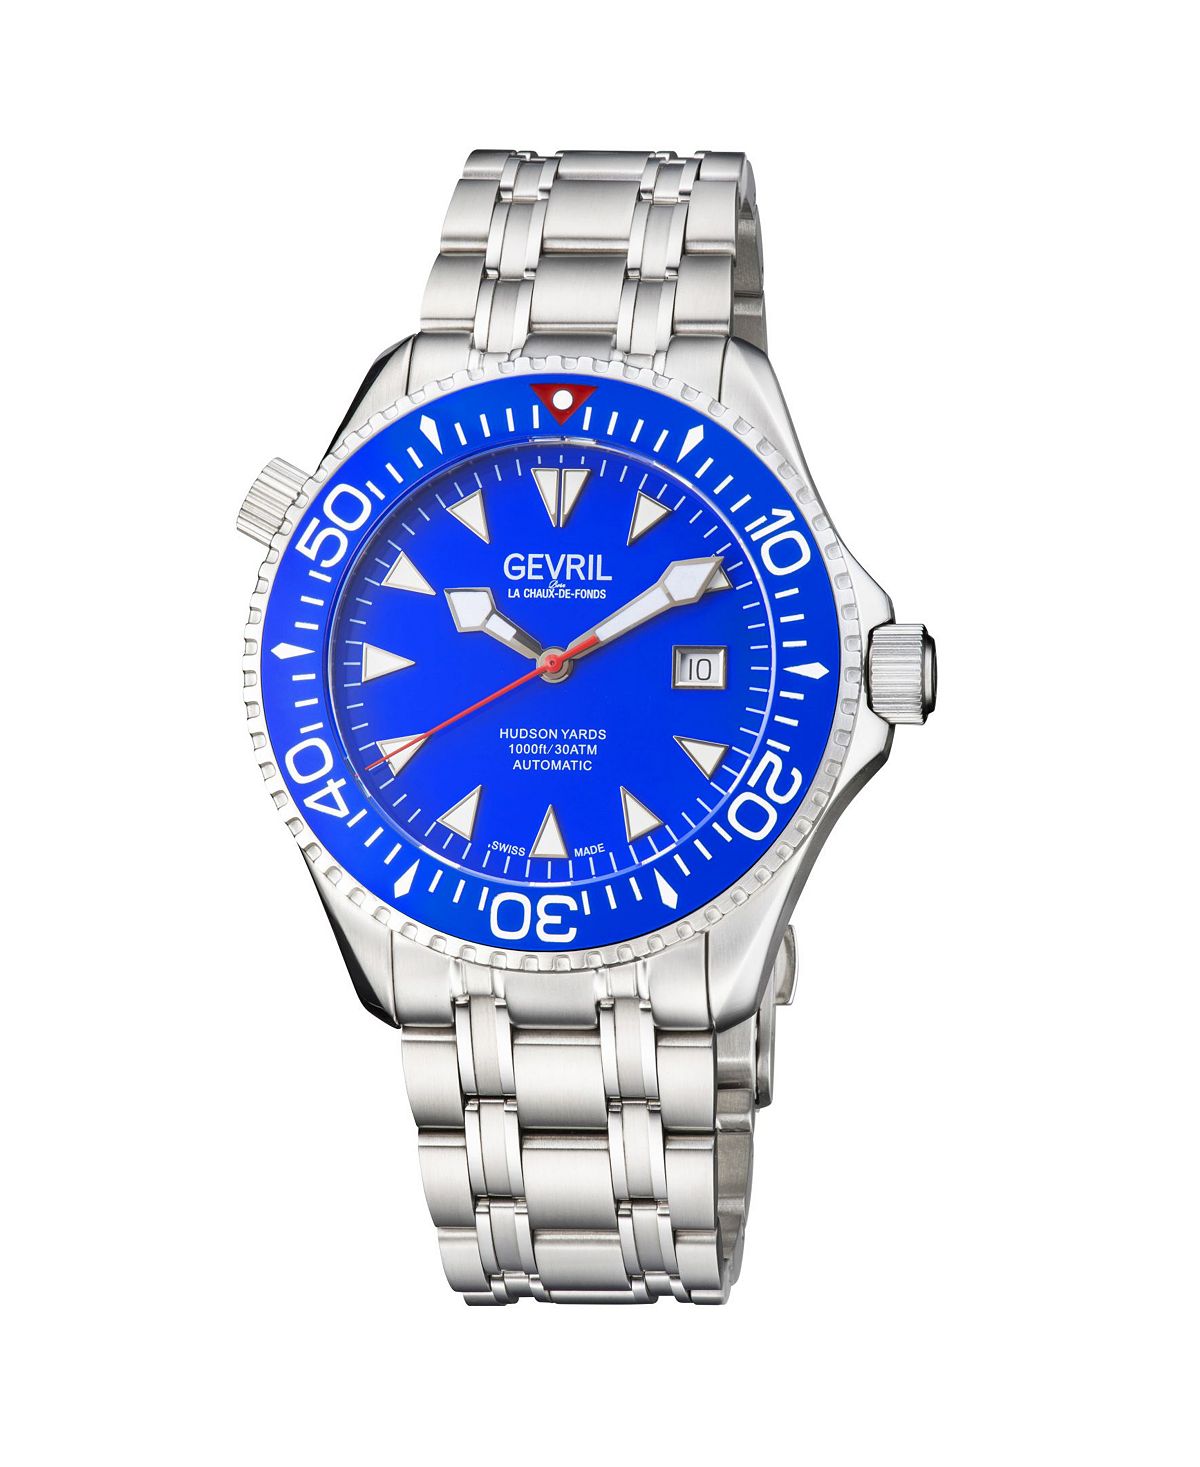 Мужские часы Hudson Yards 48801 швейцарские автоматические часы-браслет 43 мм Gevril